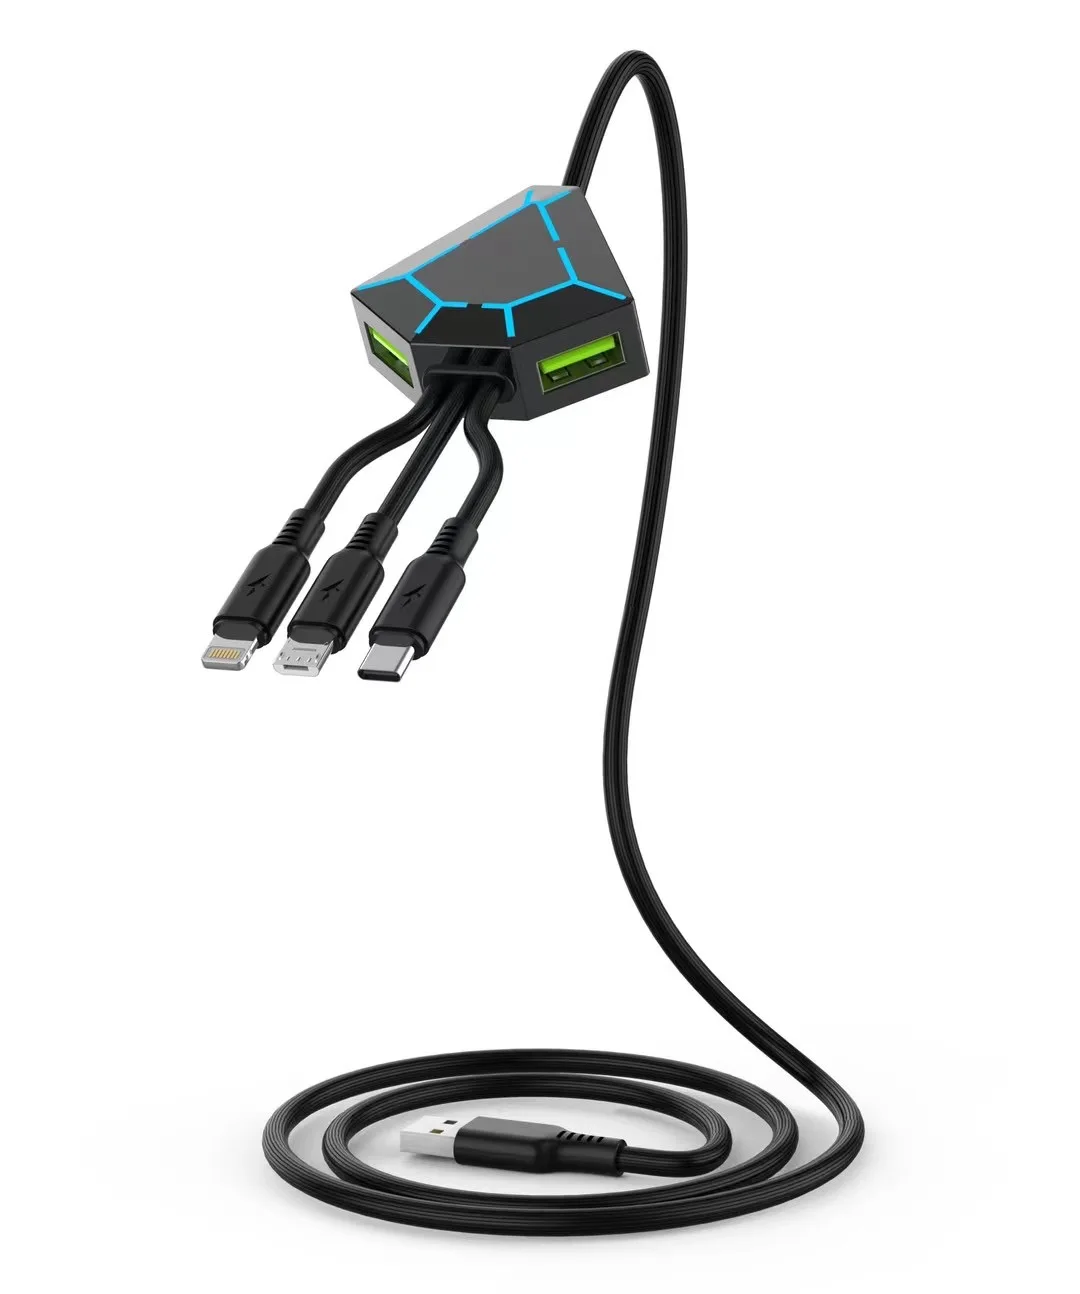 Usb-кабель для передачи данных 5 в 1, 1,2 м, 2 а, с usb-портами для мобильного телефона, U-диска, принтера, мыши и клавиатуры